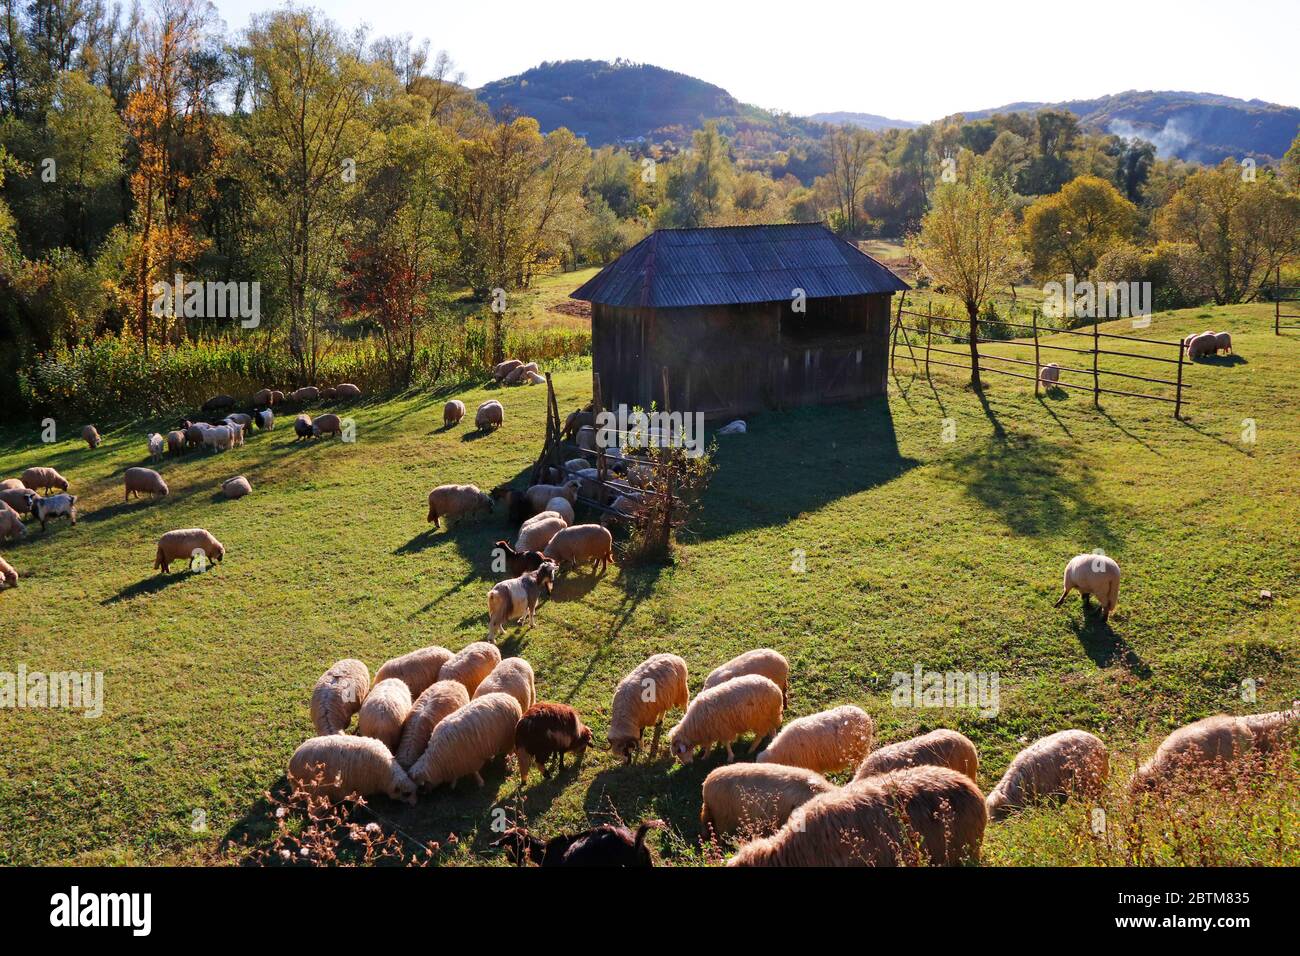 Sheeps in Bucovina region, Romania Stock Photo